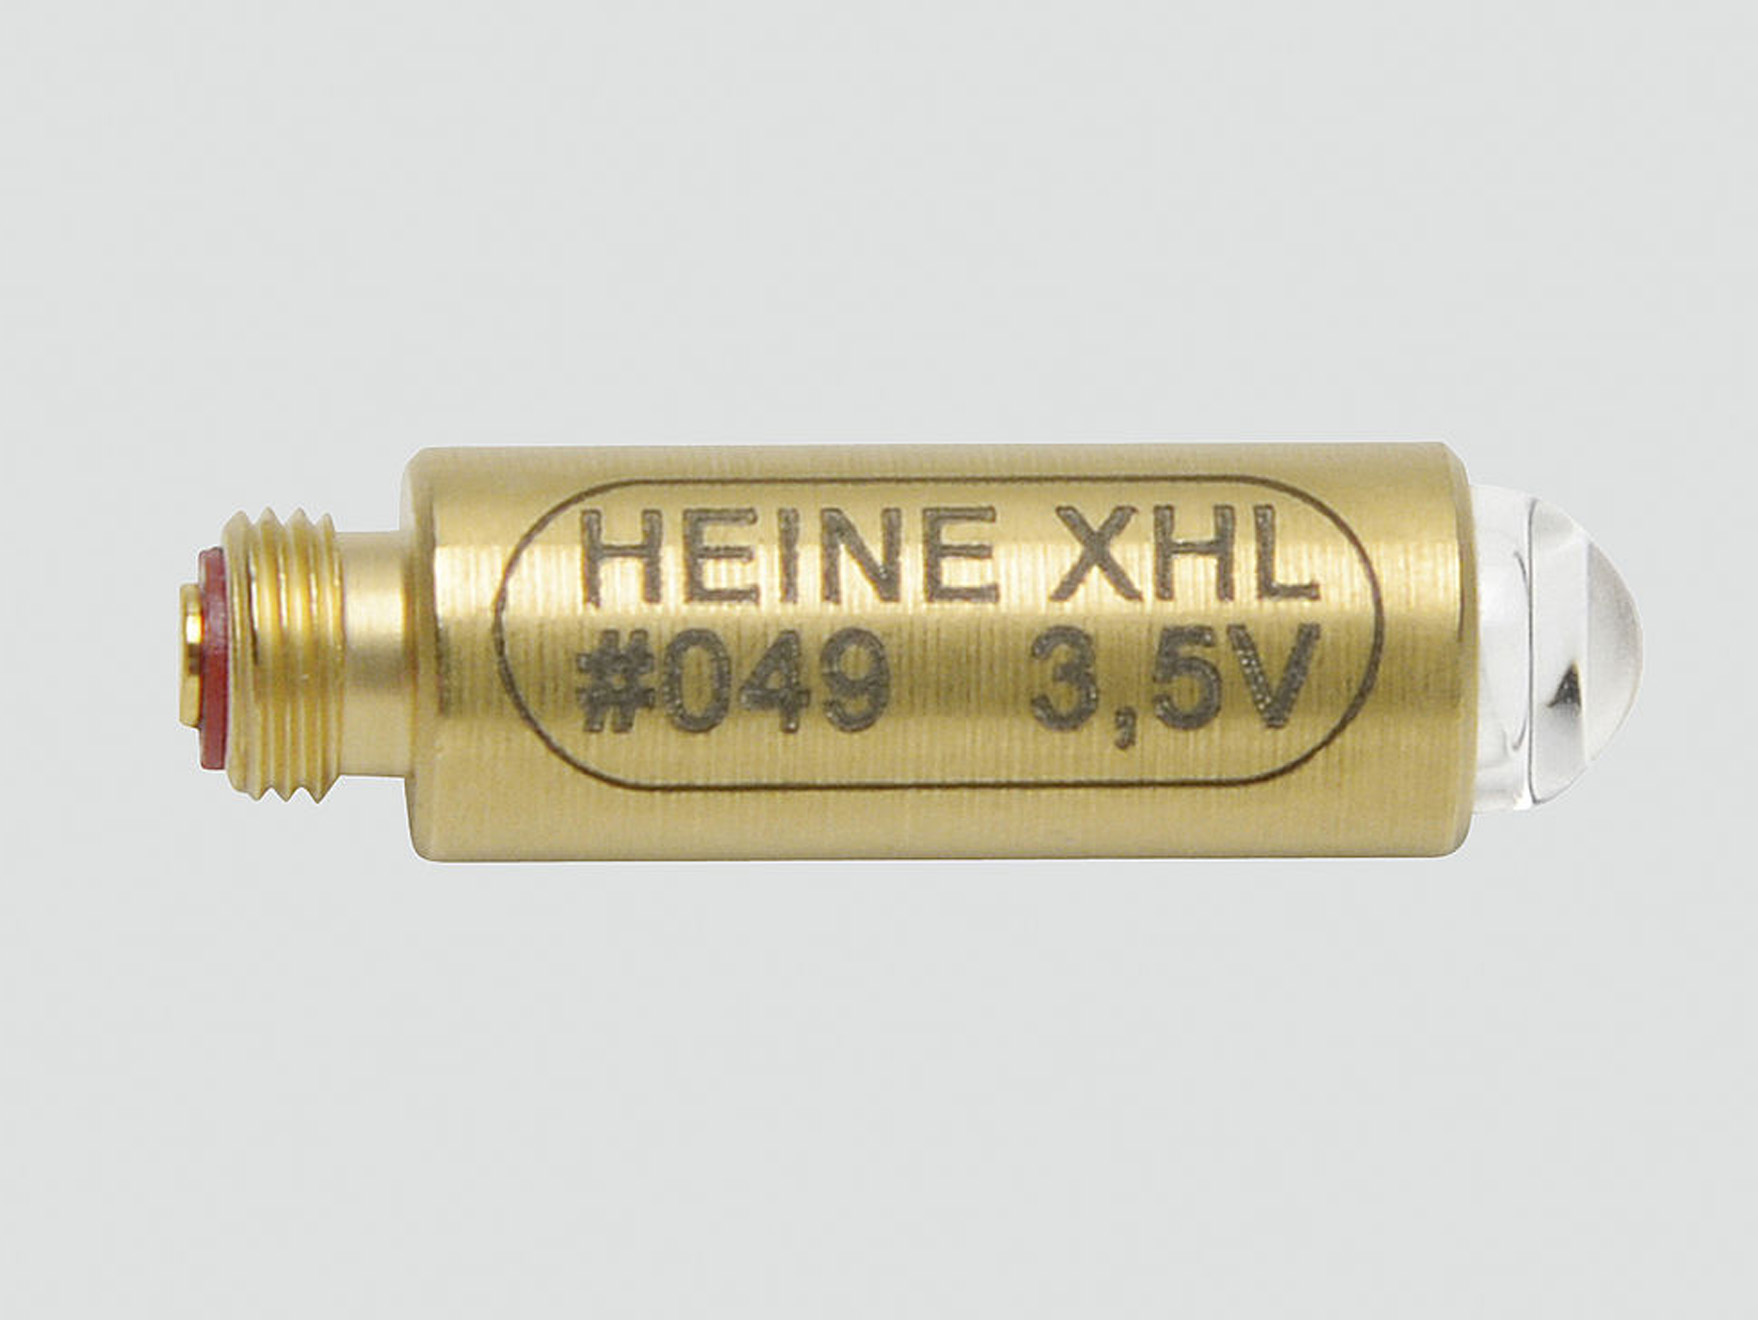 Lampje X-02.88.049 - 3,5V - halogeen - 1 st